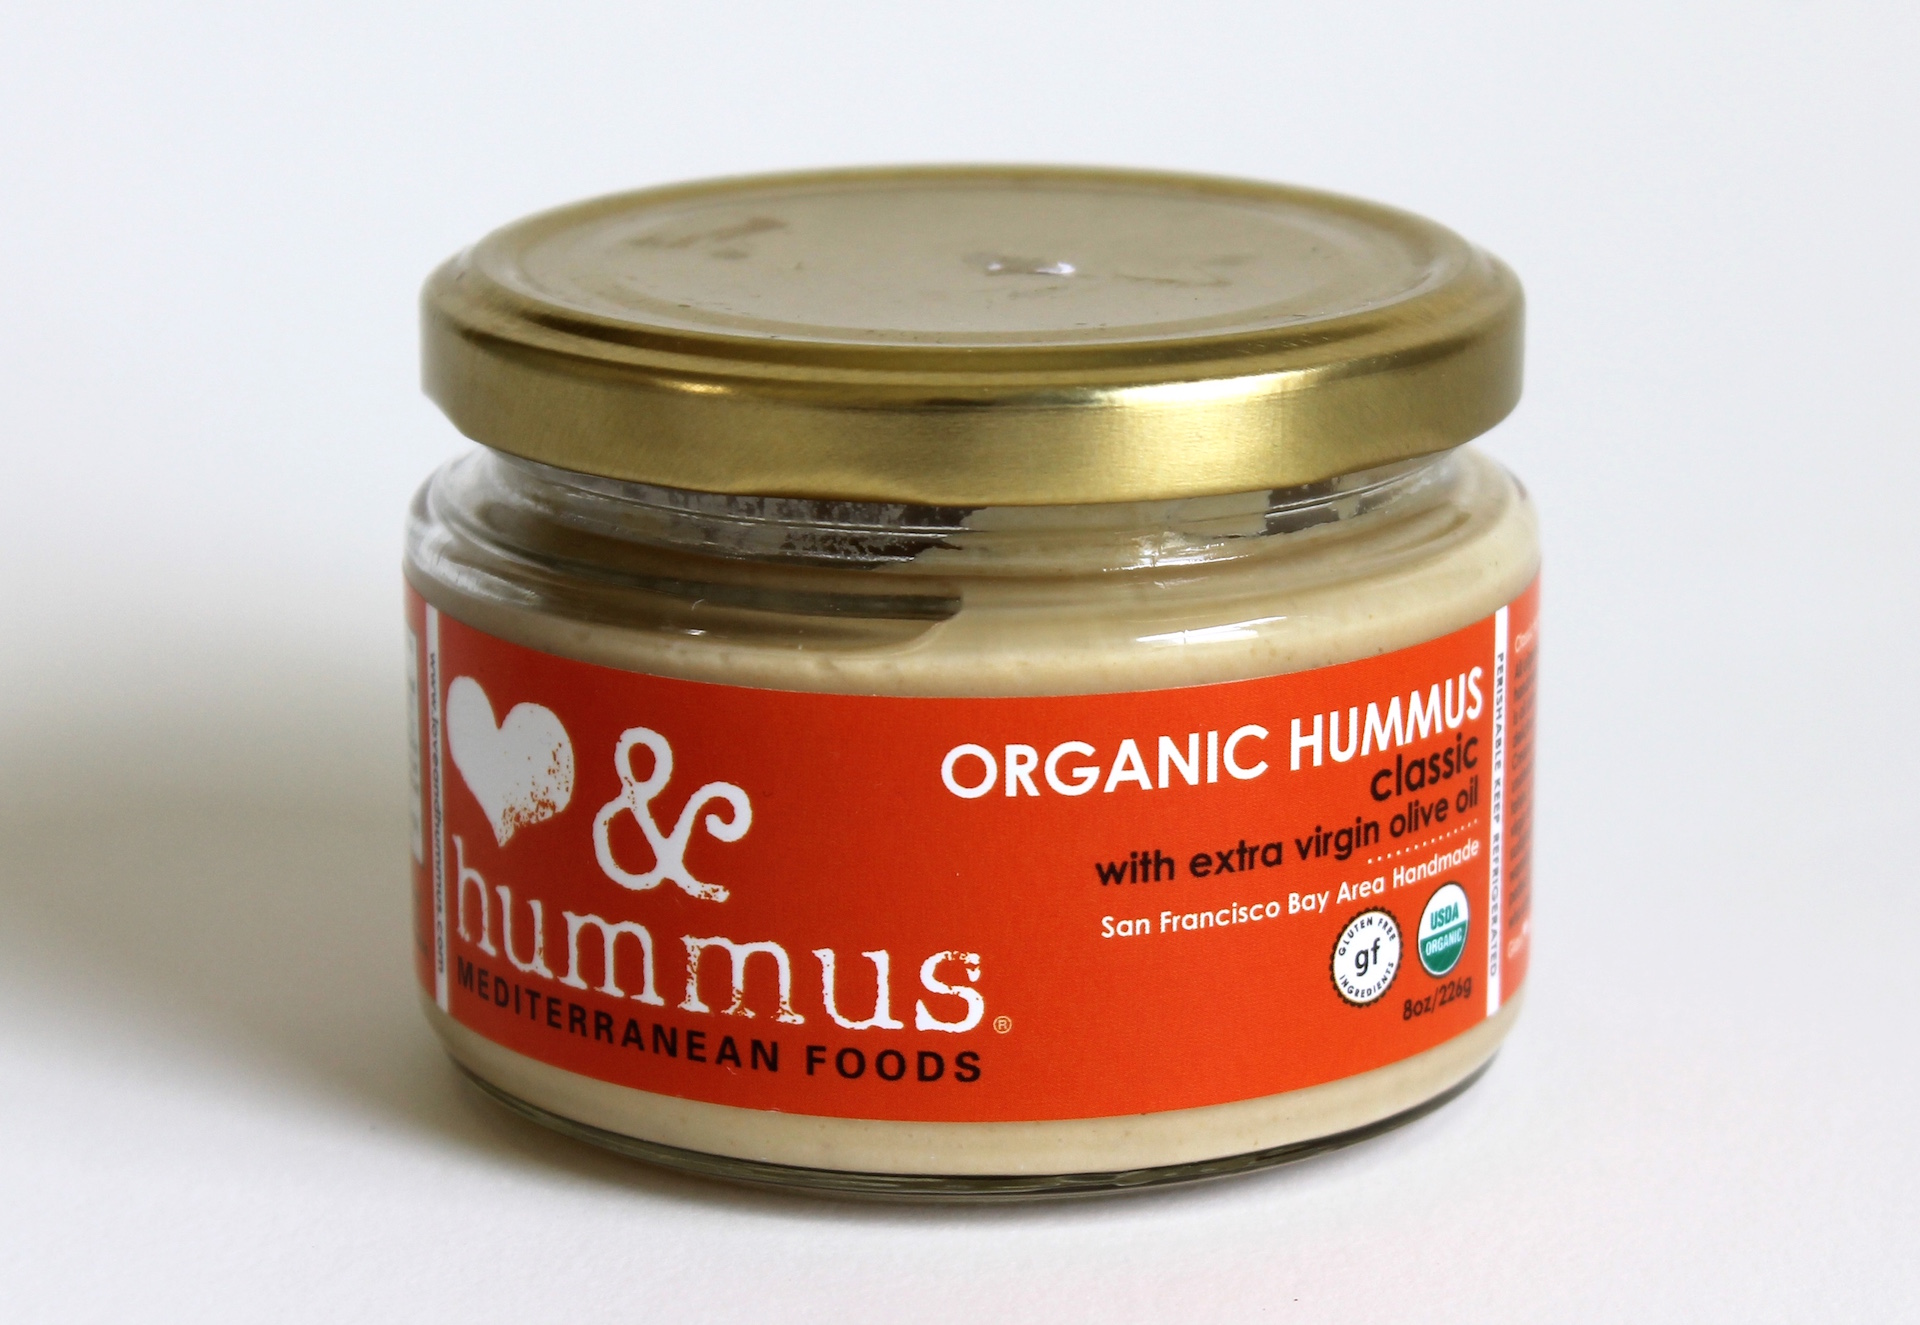 Hummus Organic Hummus Classic